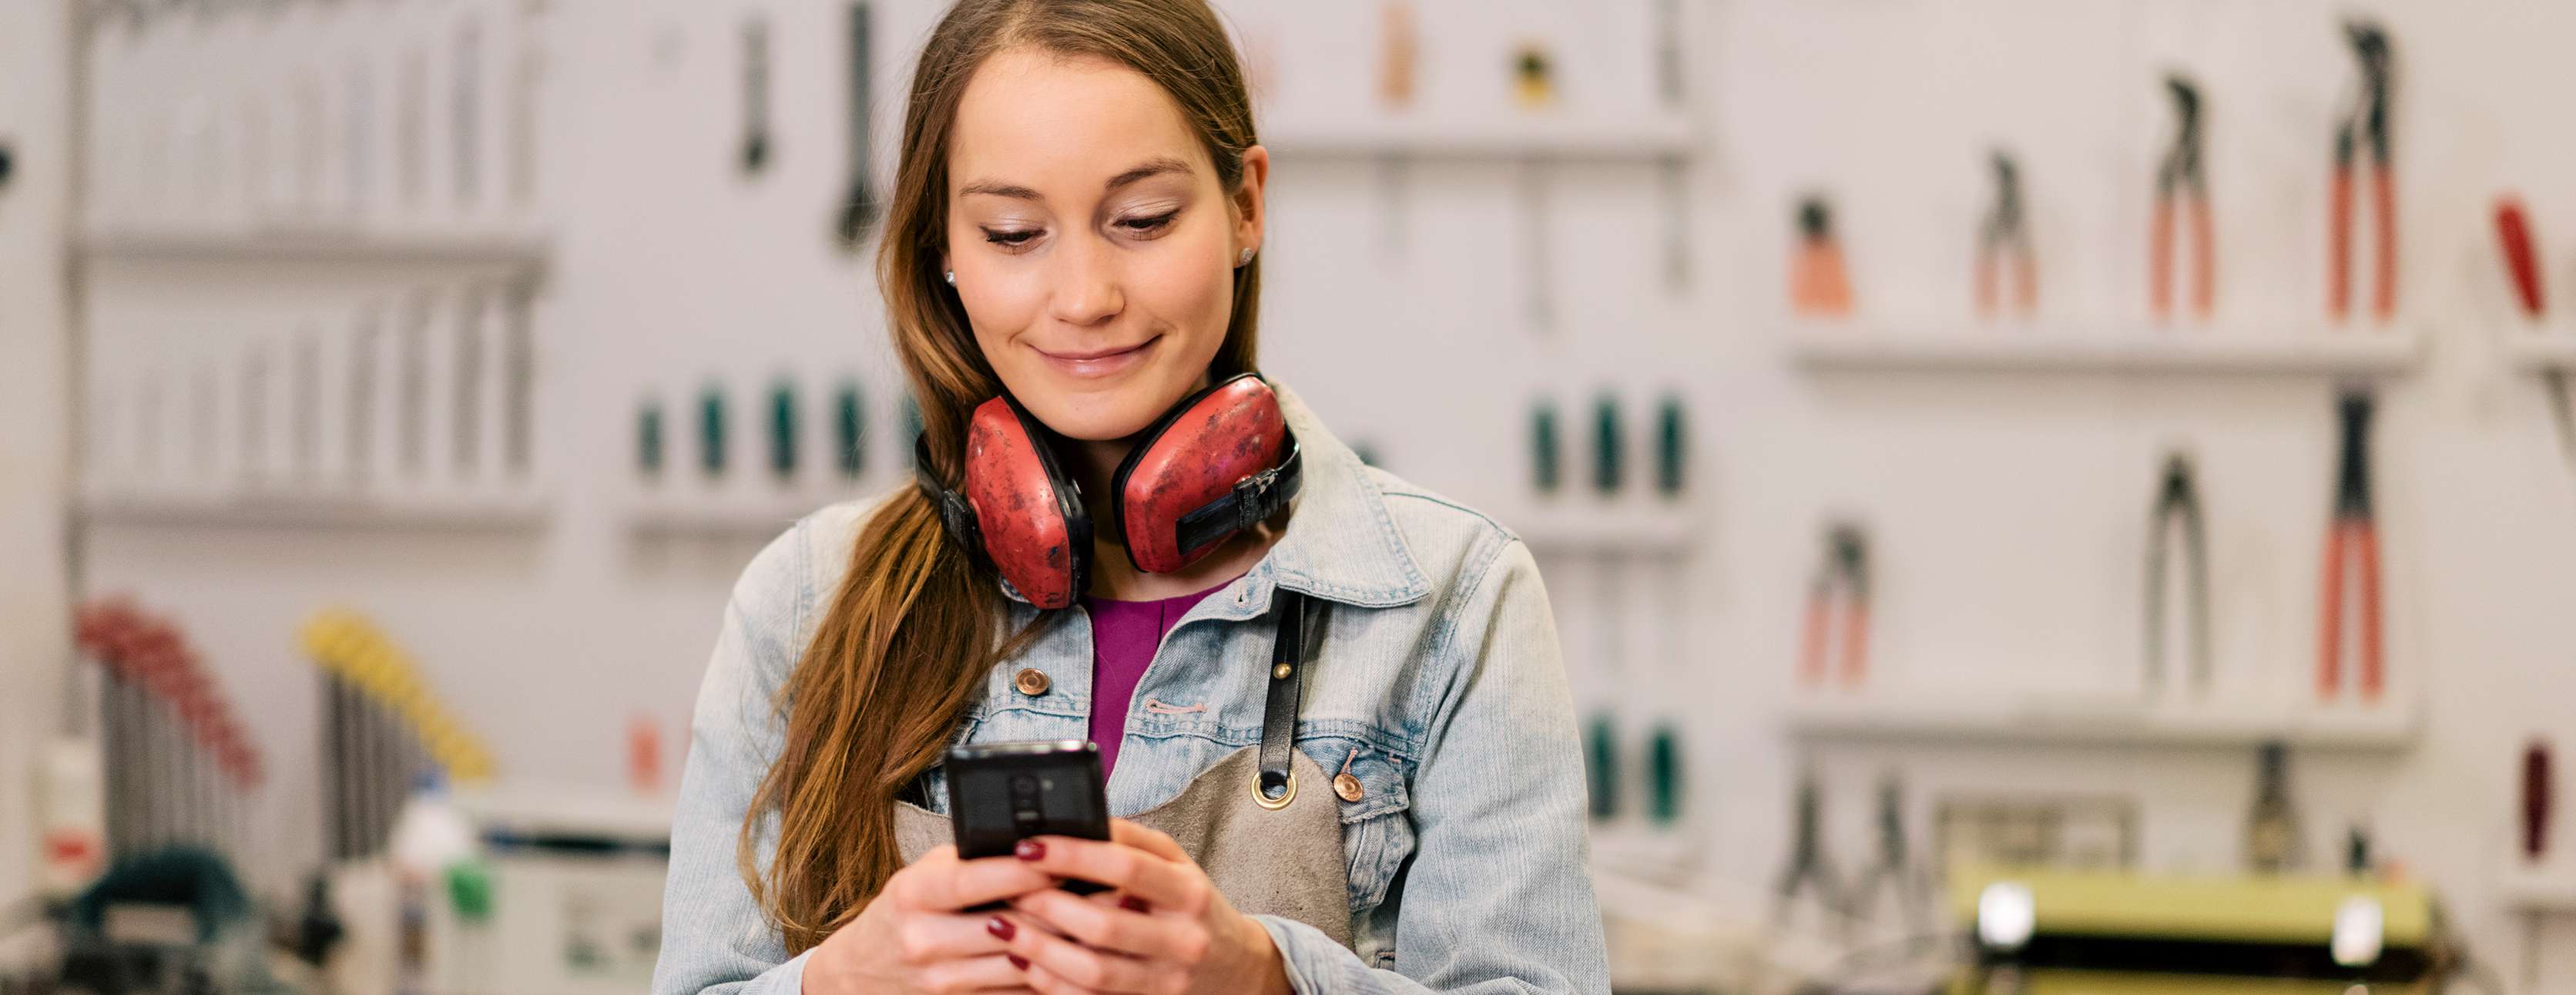 Allianz - Smartphone Nutzung am Arbeitsplatz: Junge Frau im Monteursanzug bedient Handy in einer Werkstatt